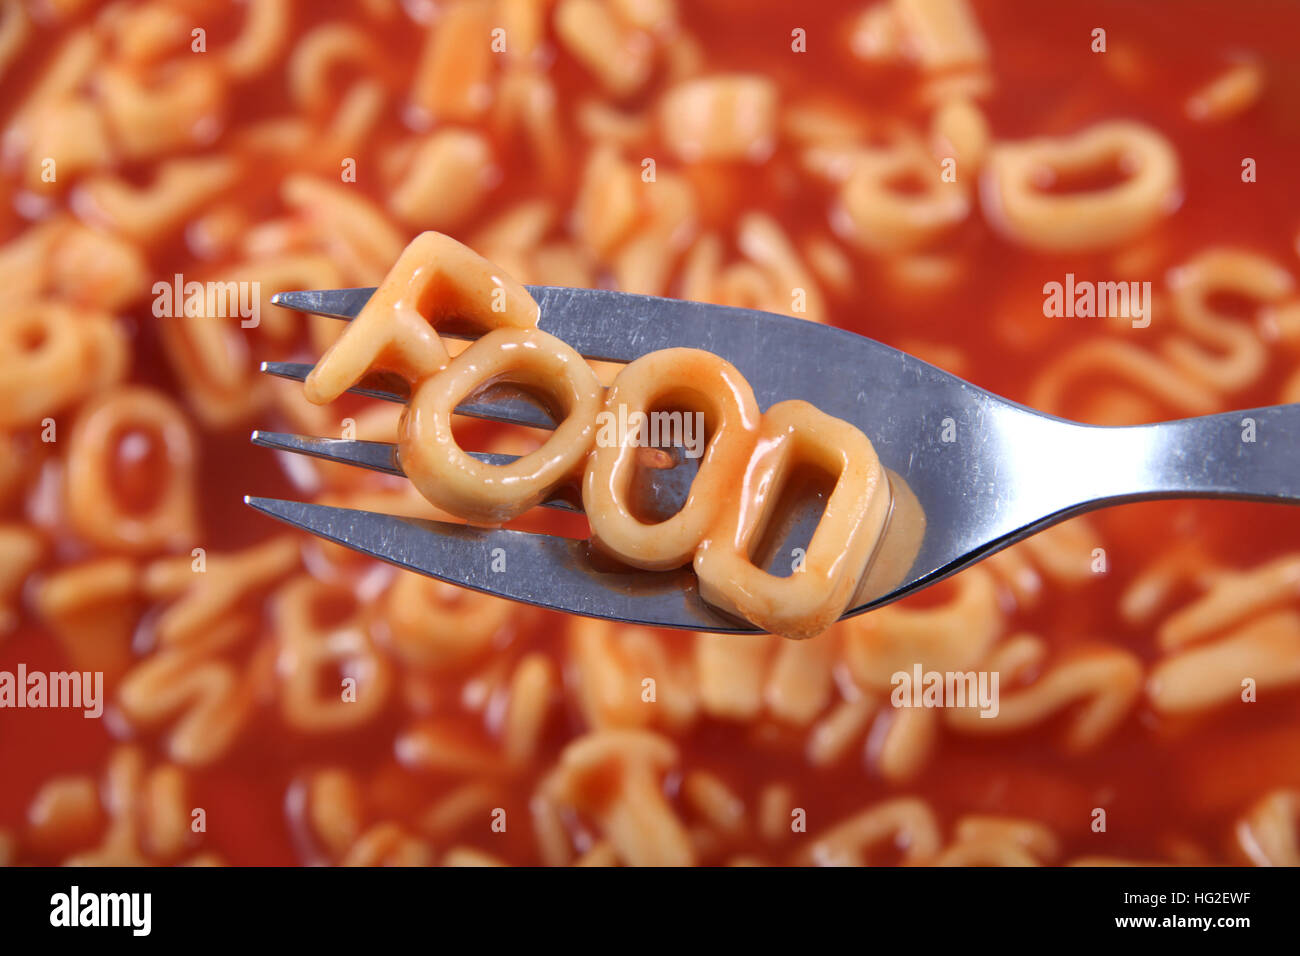 Spaghetti lettera l'ortografia della parola "alimentare" con le lettere detenute fino ad una forcella. Foto Stock